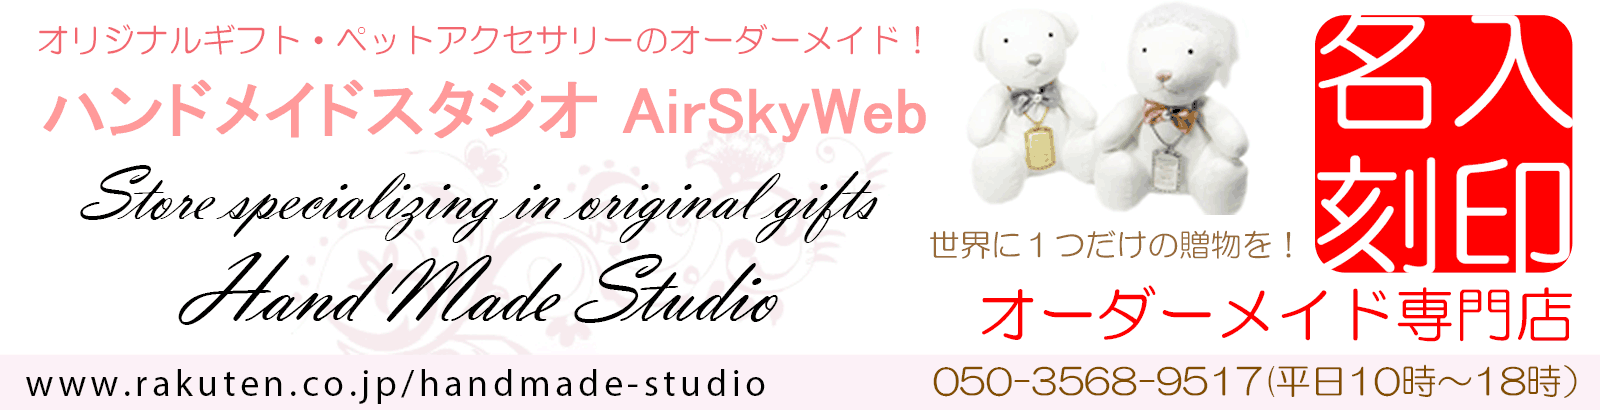 ハンドメイドスタジオ AirSkyWeb